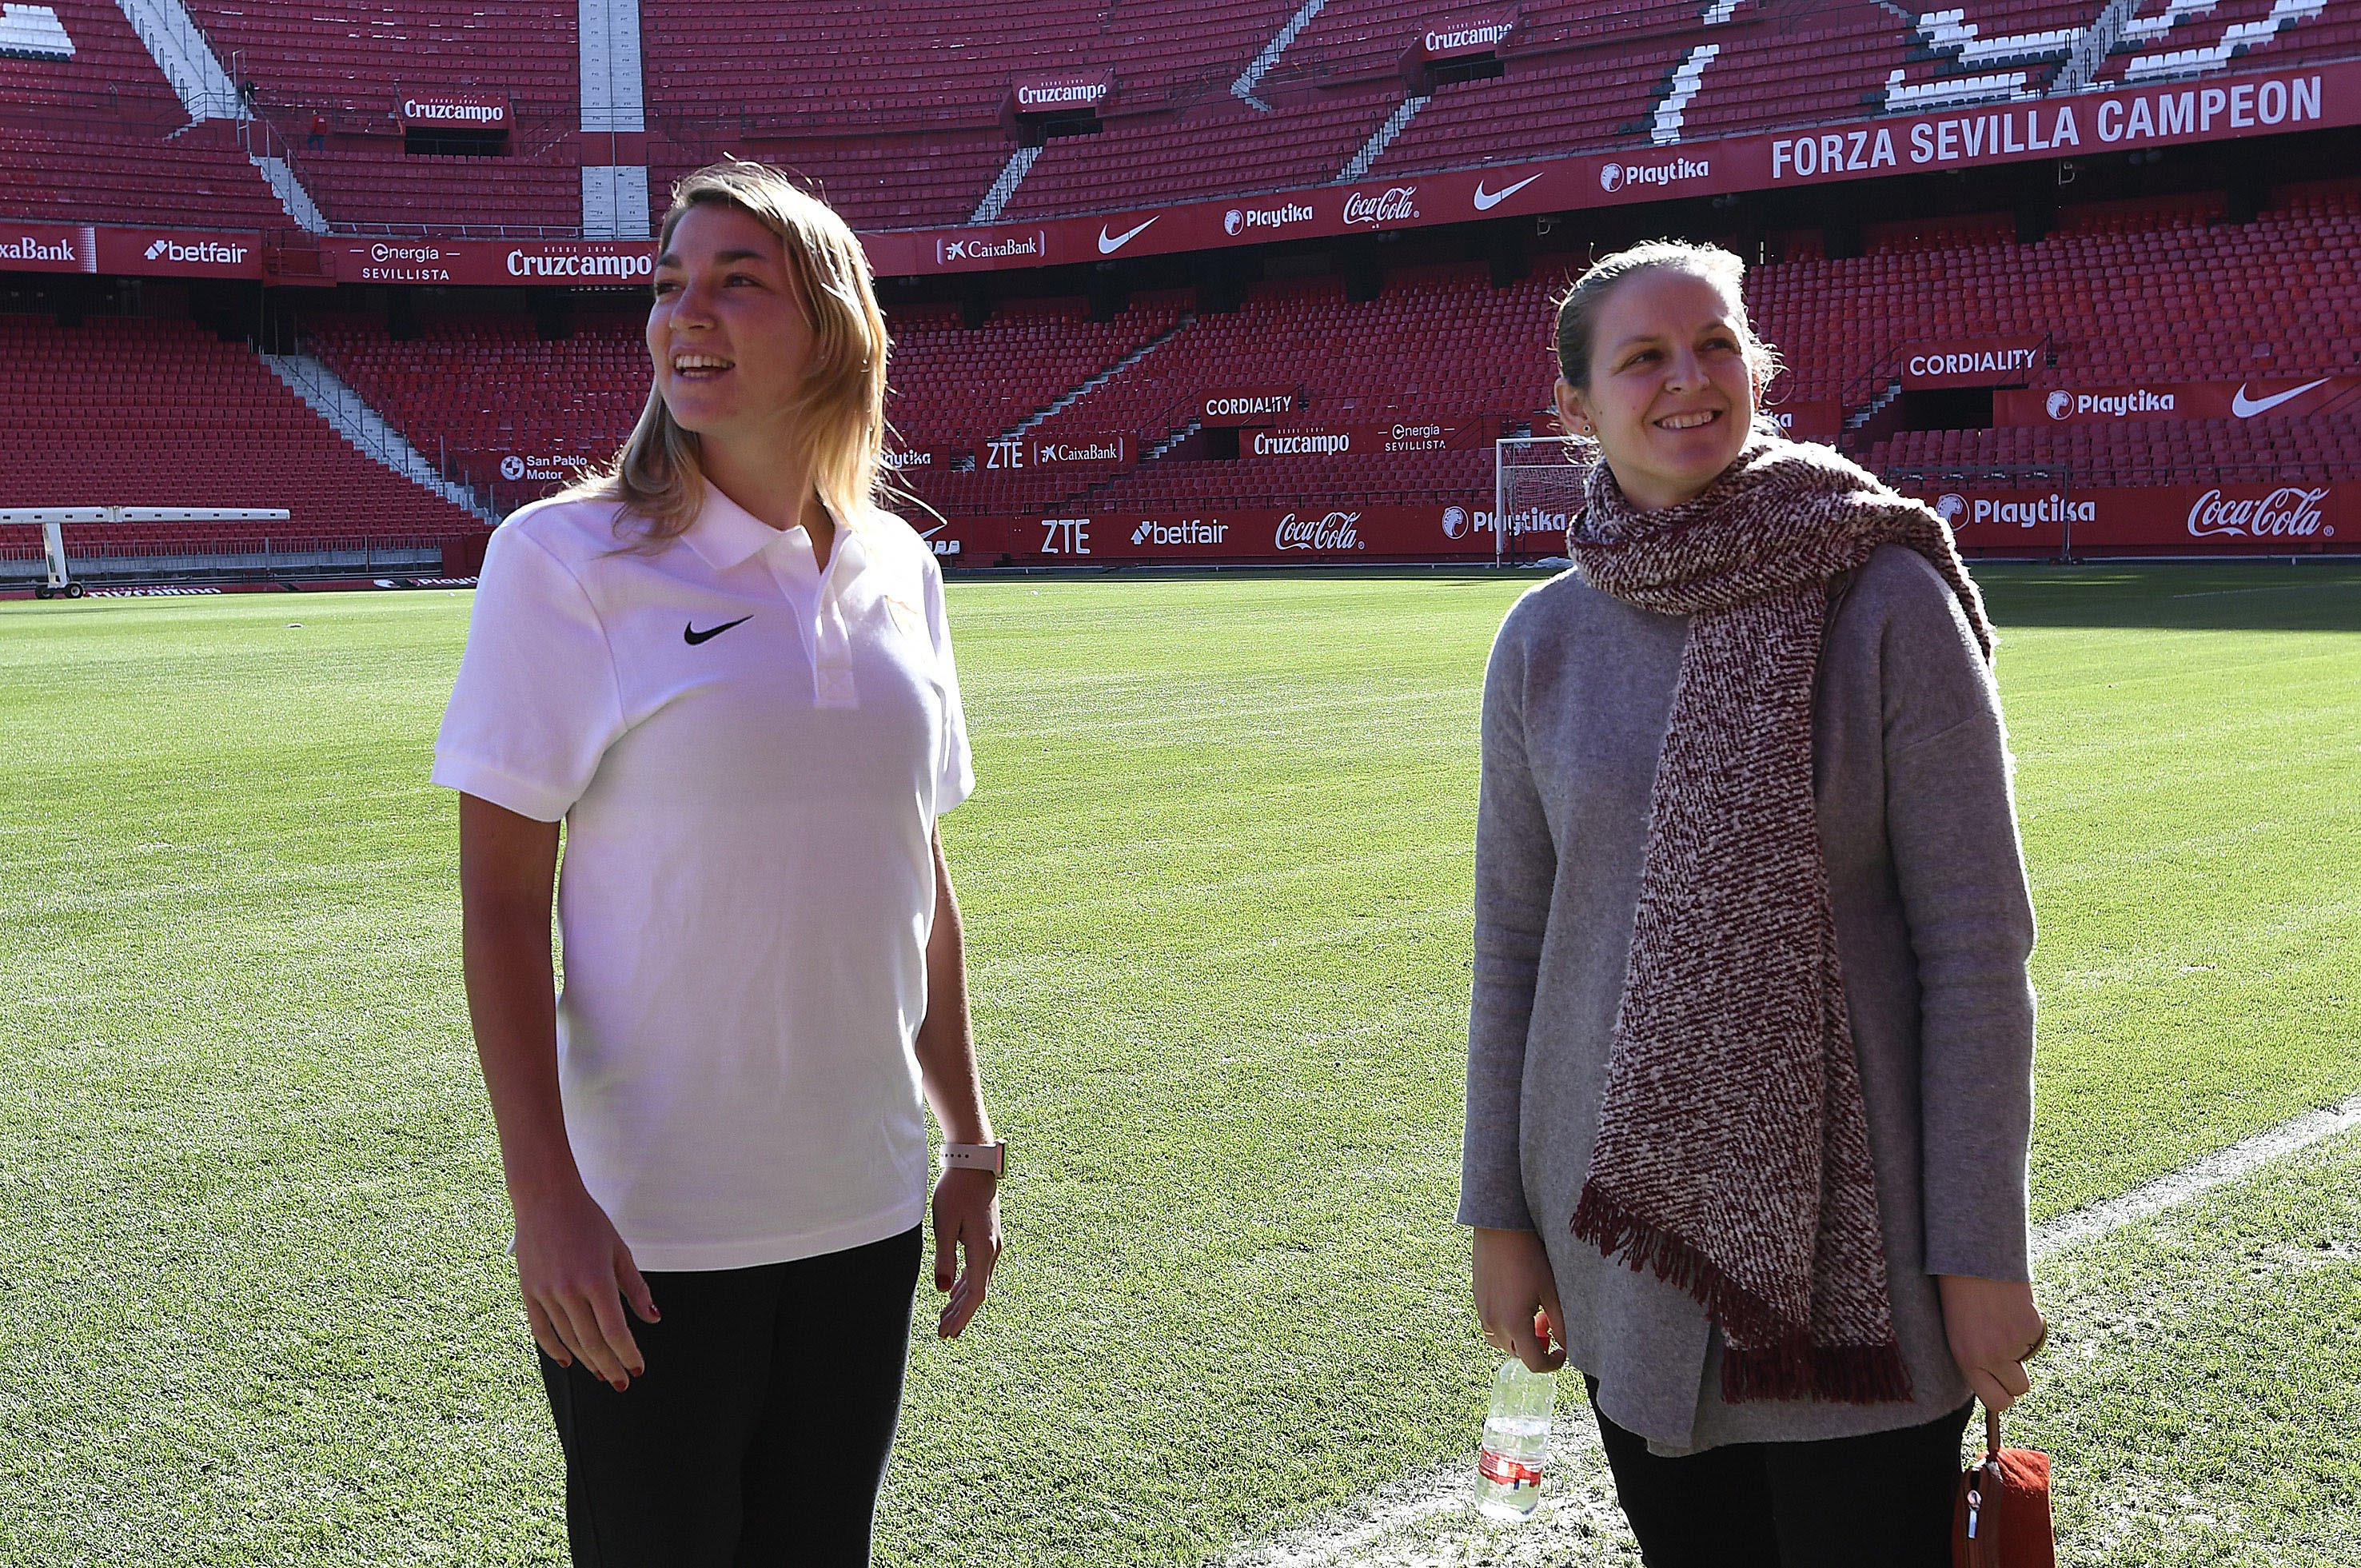 Amparo Gutiérrez, Directora de Fútbol Femenino del Sevilla FC, pisa el césped acompañando a Aldana Cometti en su presentación como jugadora del primer equipo femenino